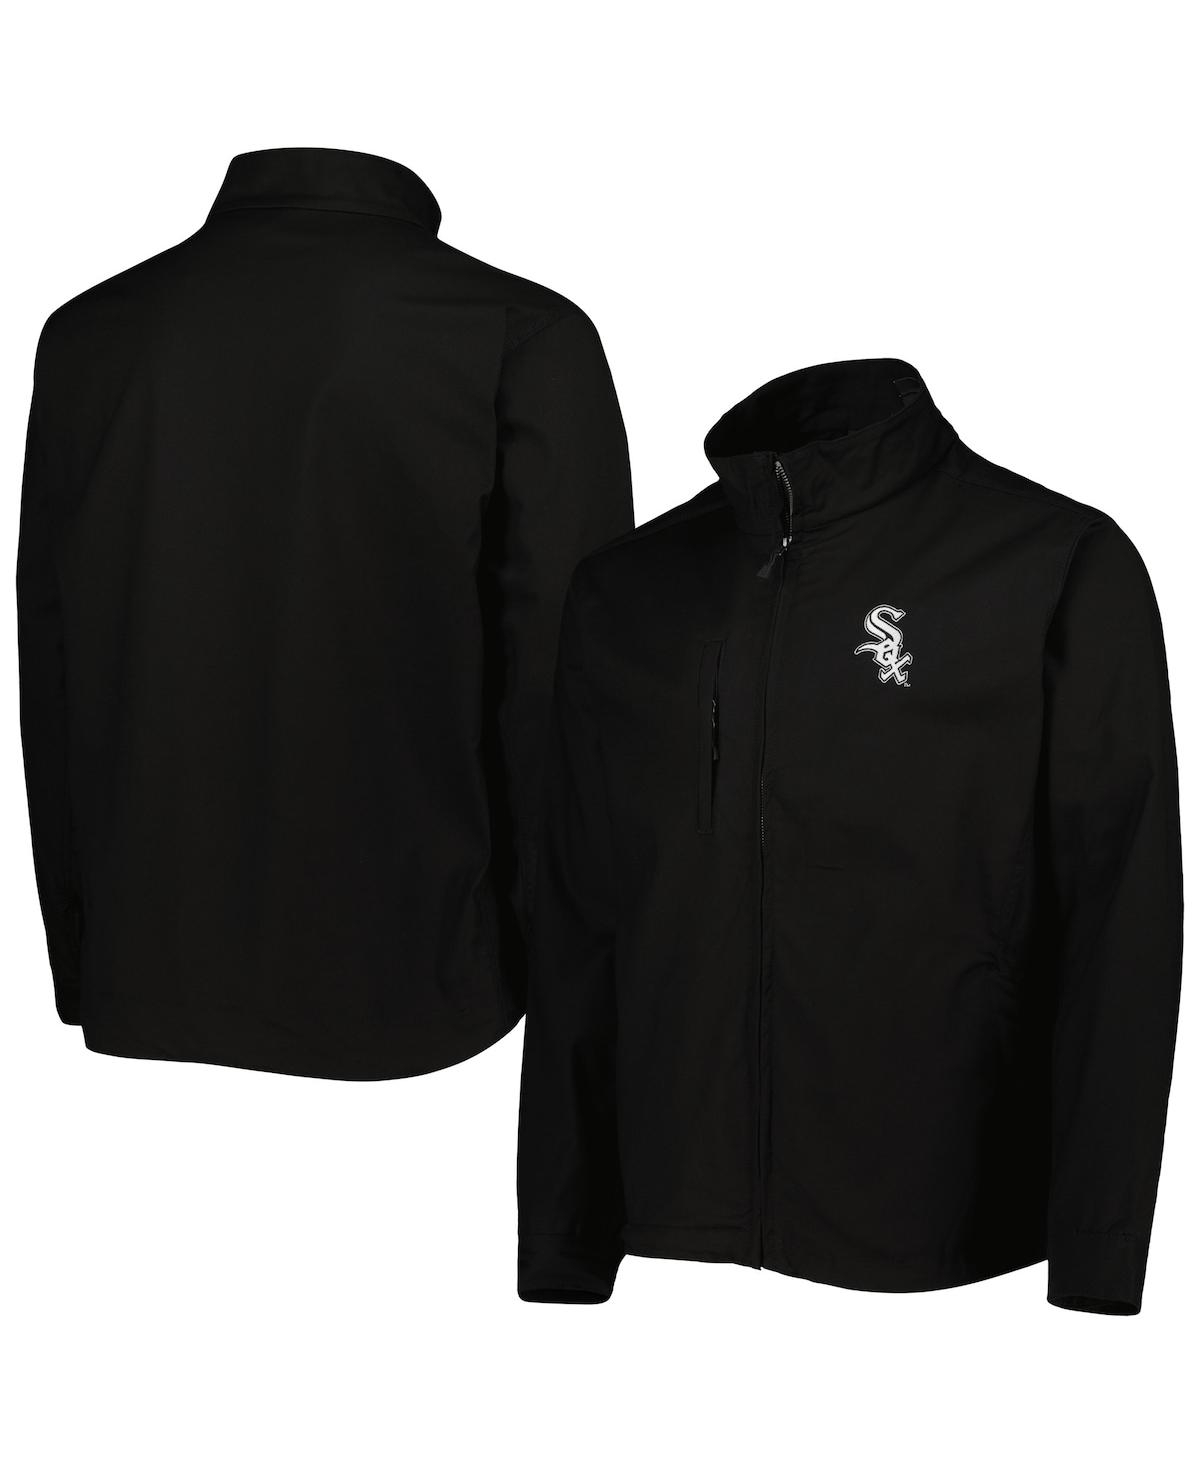 Shop Dunbrooke Men's  Black Chicago White Sox Journey Tri-blend Full-zip Jacket